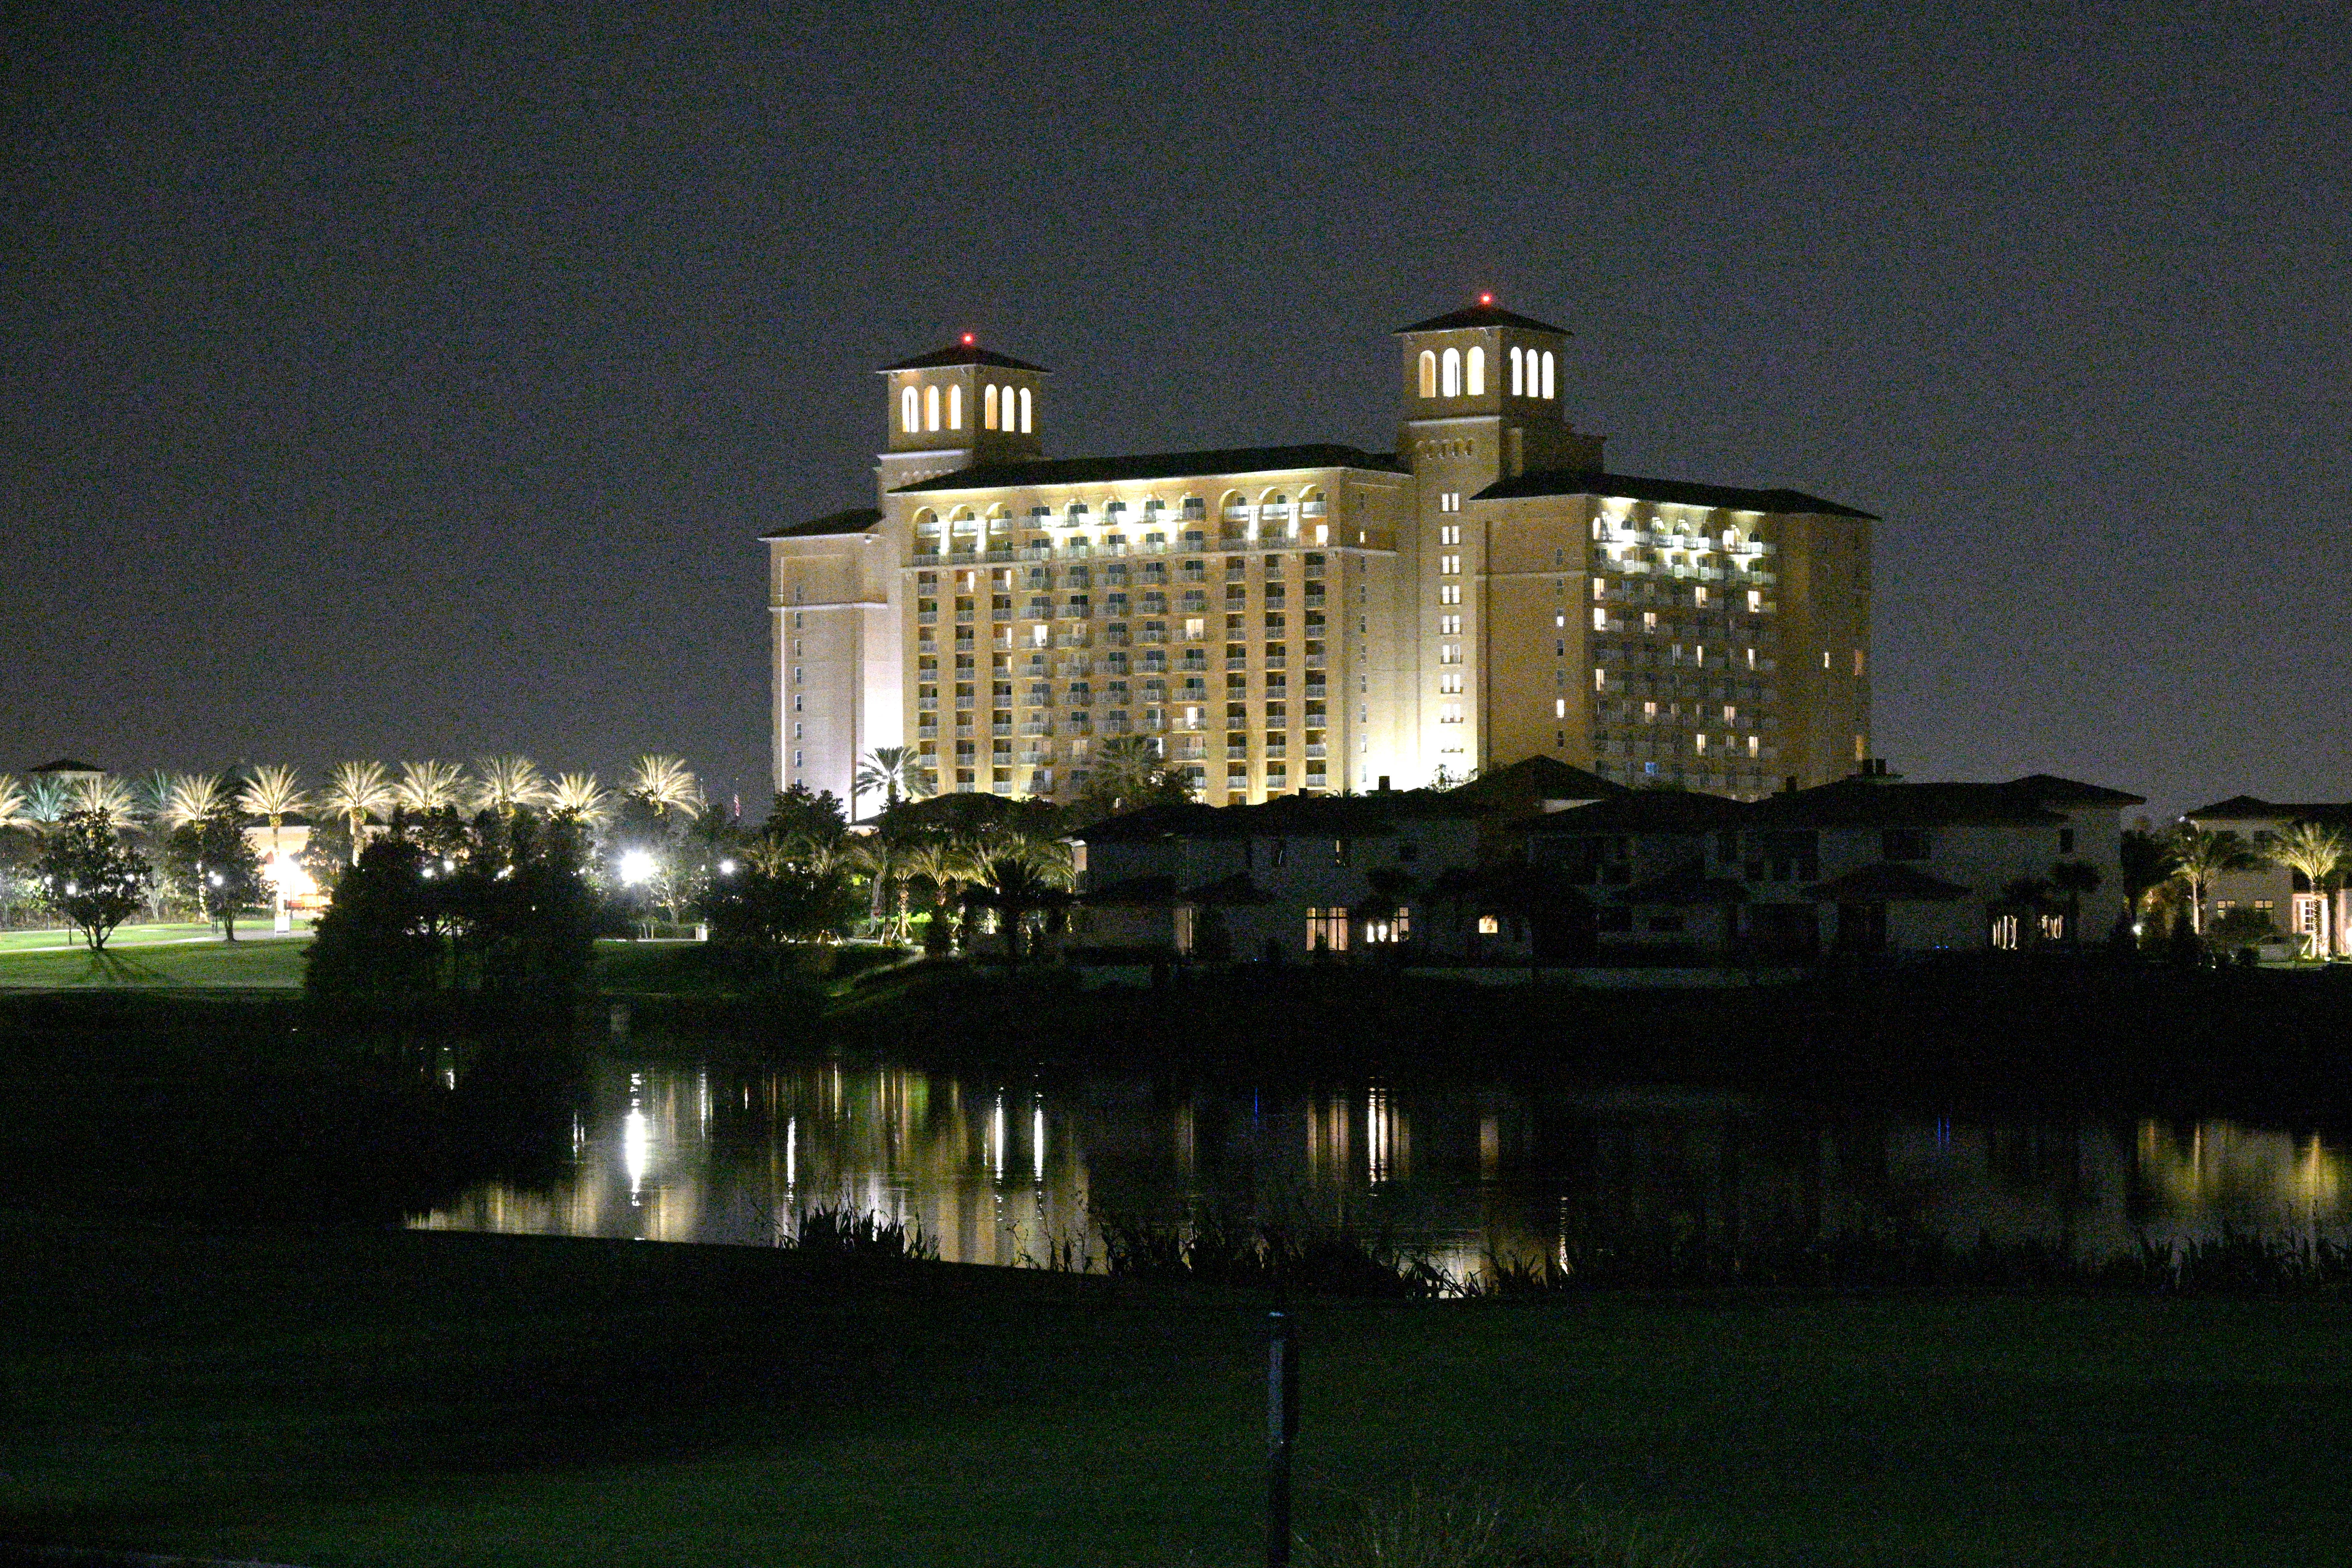 El hotel Ritz-Carlton Orlando, Grande Lakes, a la derecha, se ve donde el actor y comediante Bob Saget fue encontrado muerto, el domingo 9 de enero de 2022, en Orlando, Florida